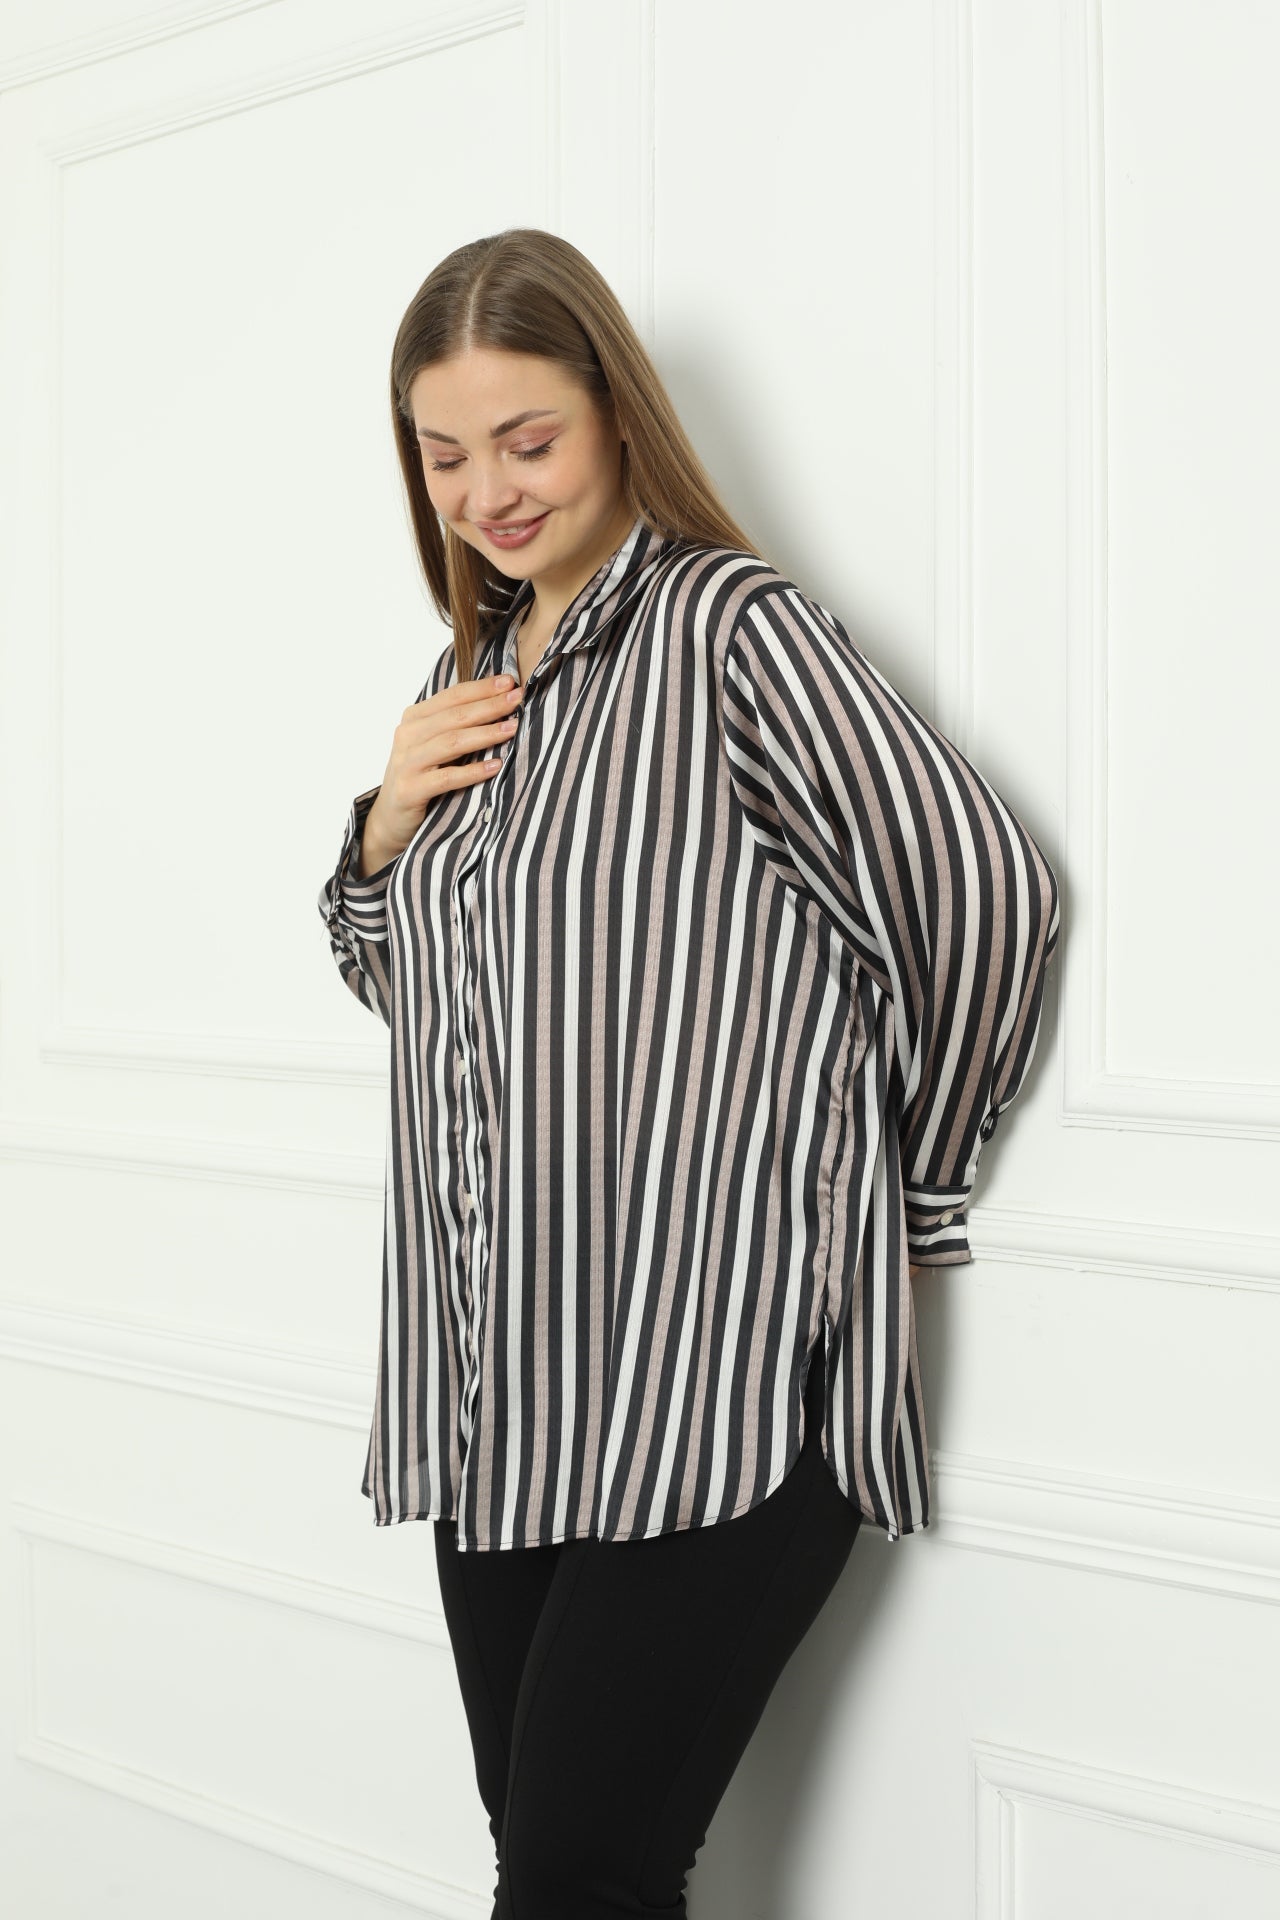 Γυναικείο πουκάμισο πολυτέλειας σε μεγάλα μεγέθη - Ρίγες